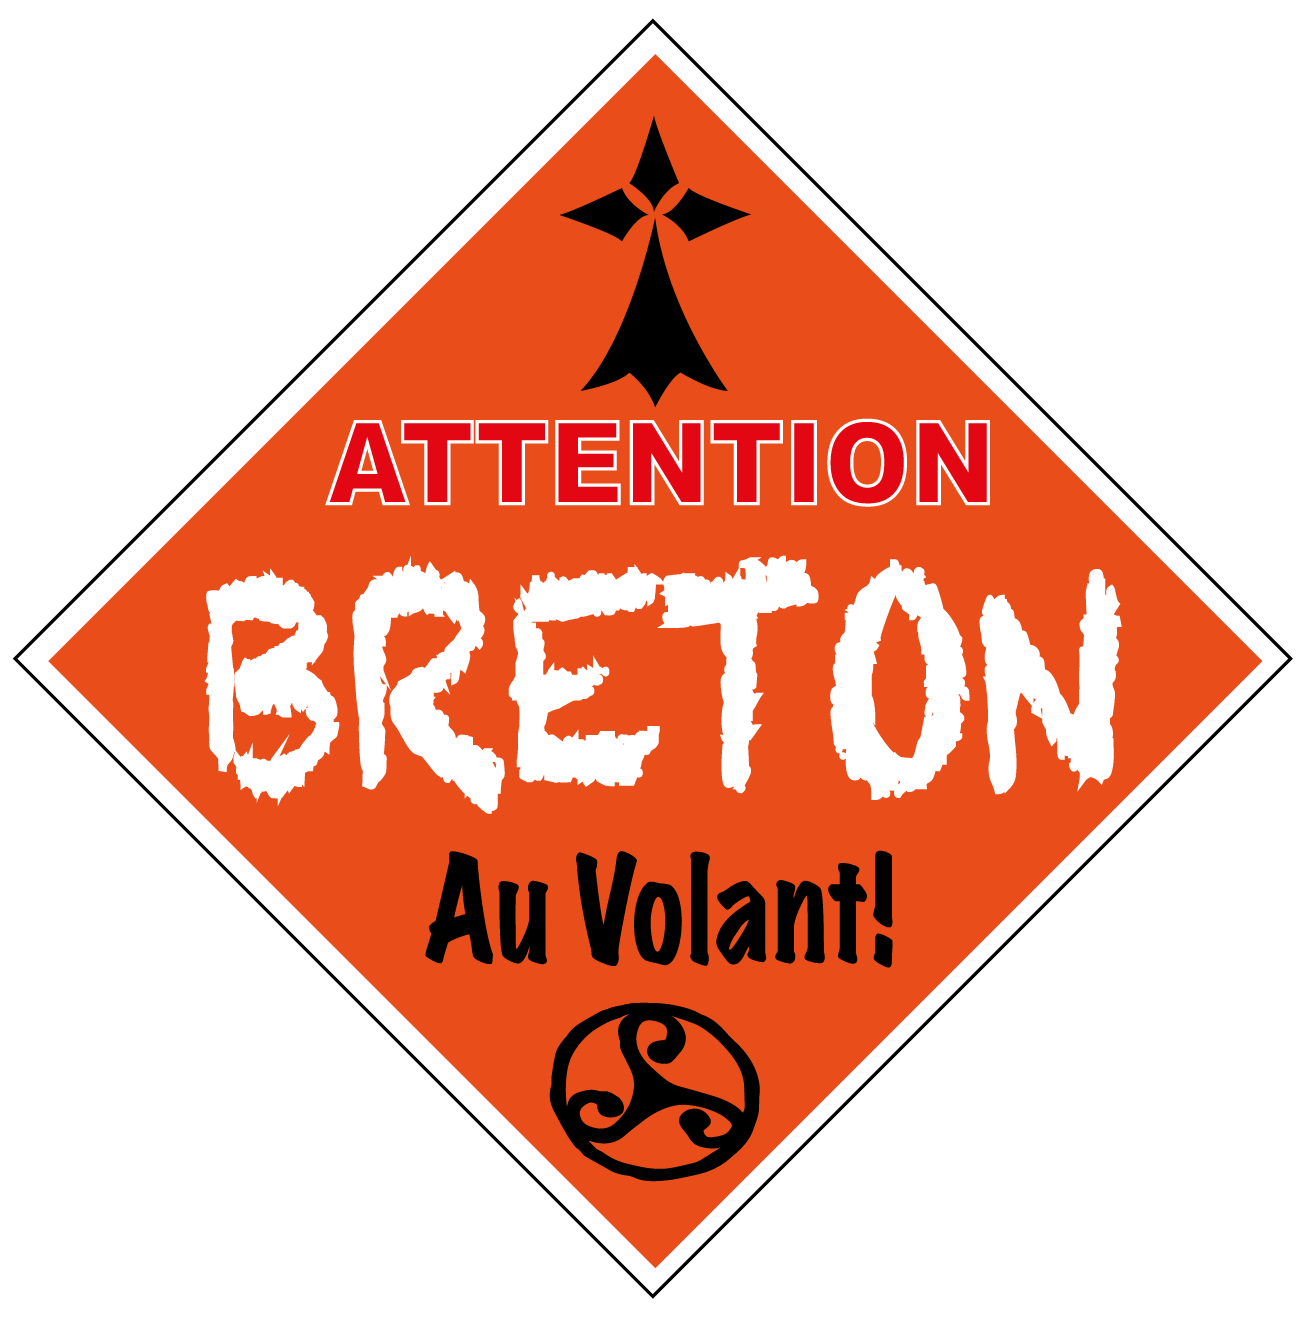 Autocollant Attention Breton Au Volant 15 x 15 cm - Autocollant BZH